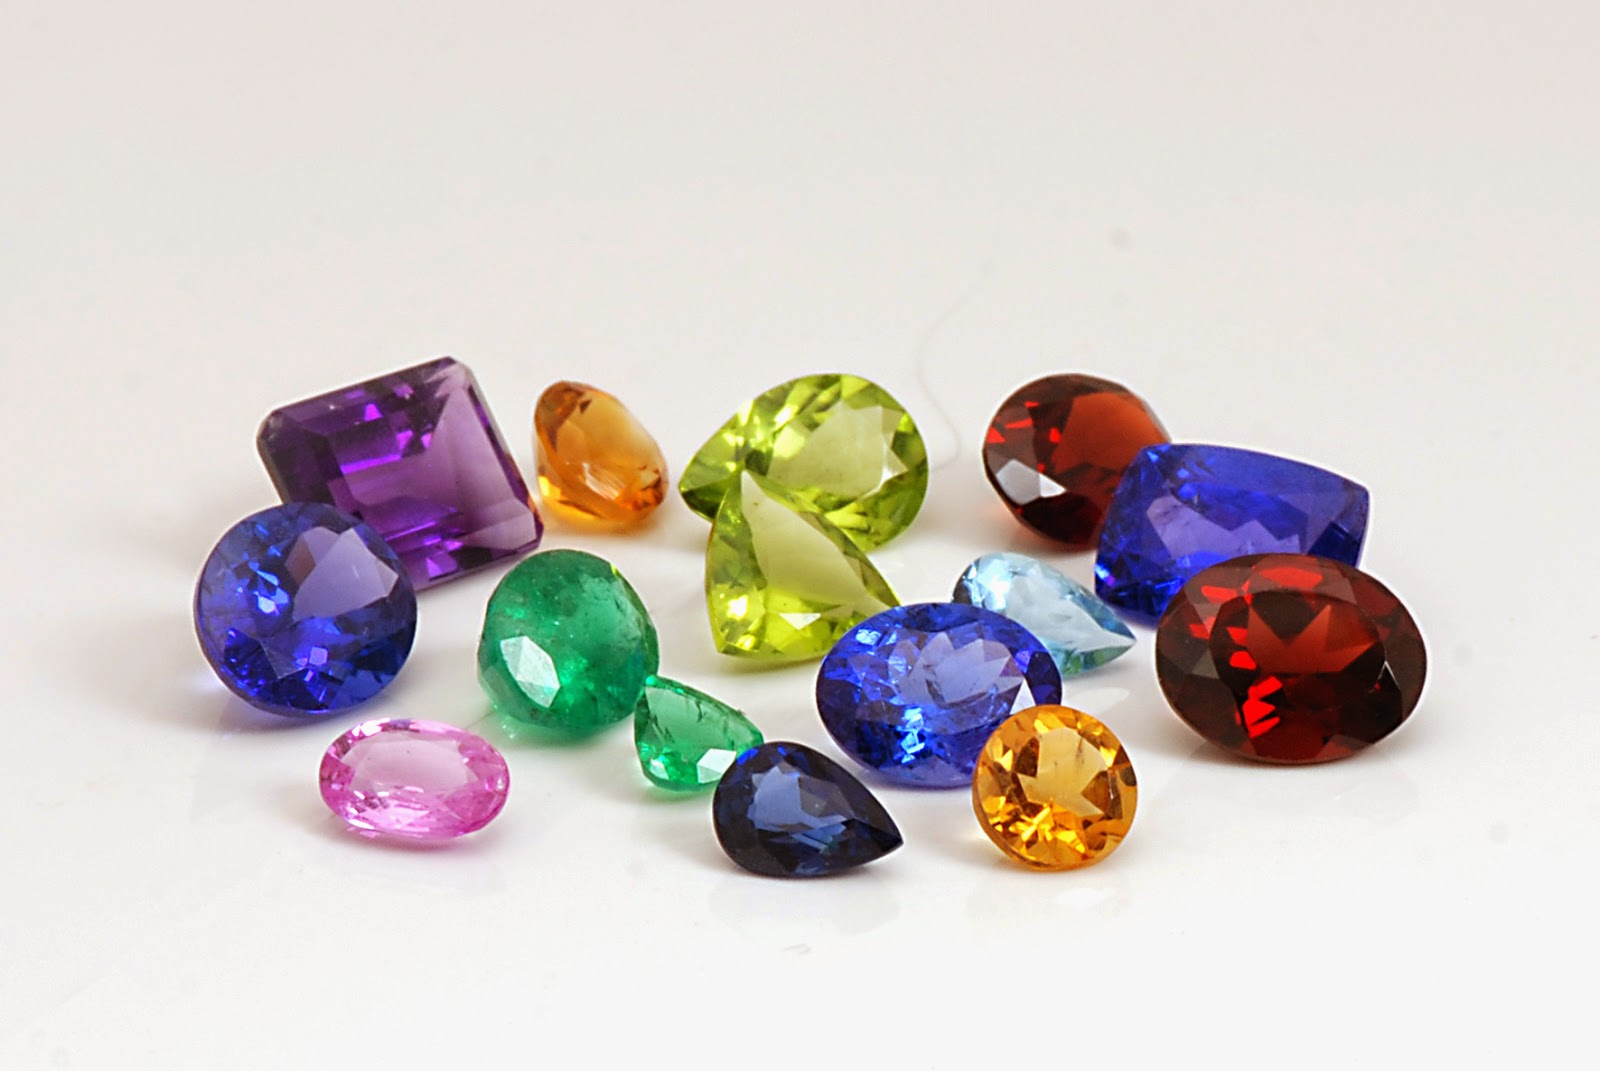 Precious stones. Цветные камни ювелирные. Разноцветные драгоценные камни. Цветные камушки. Россыпь драгоценных камней.